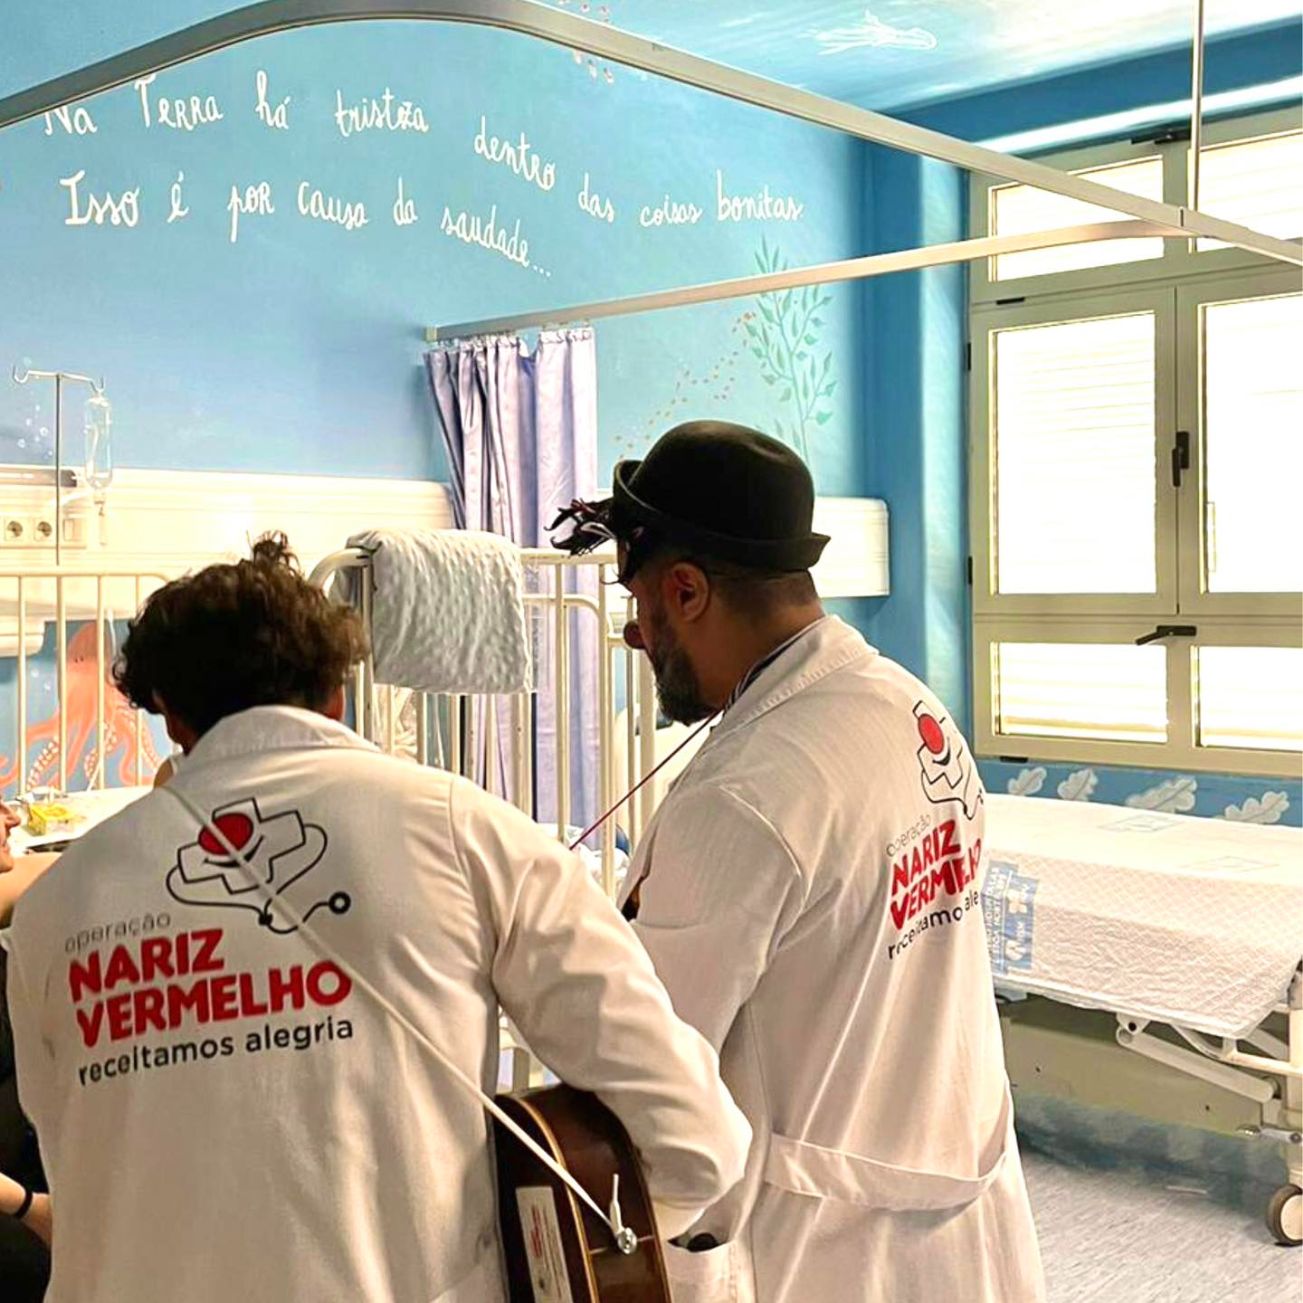 Operação Nariz Vermelho com nova campanha solidária no Pingo Doce